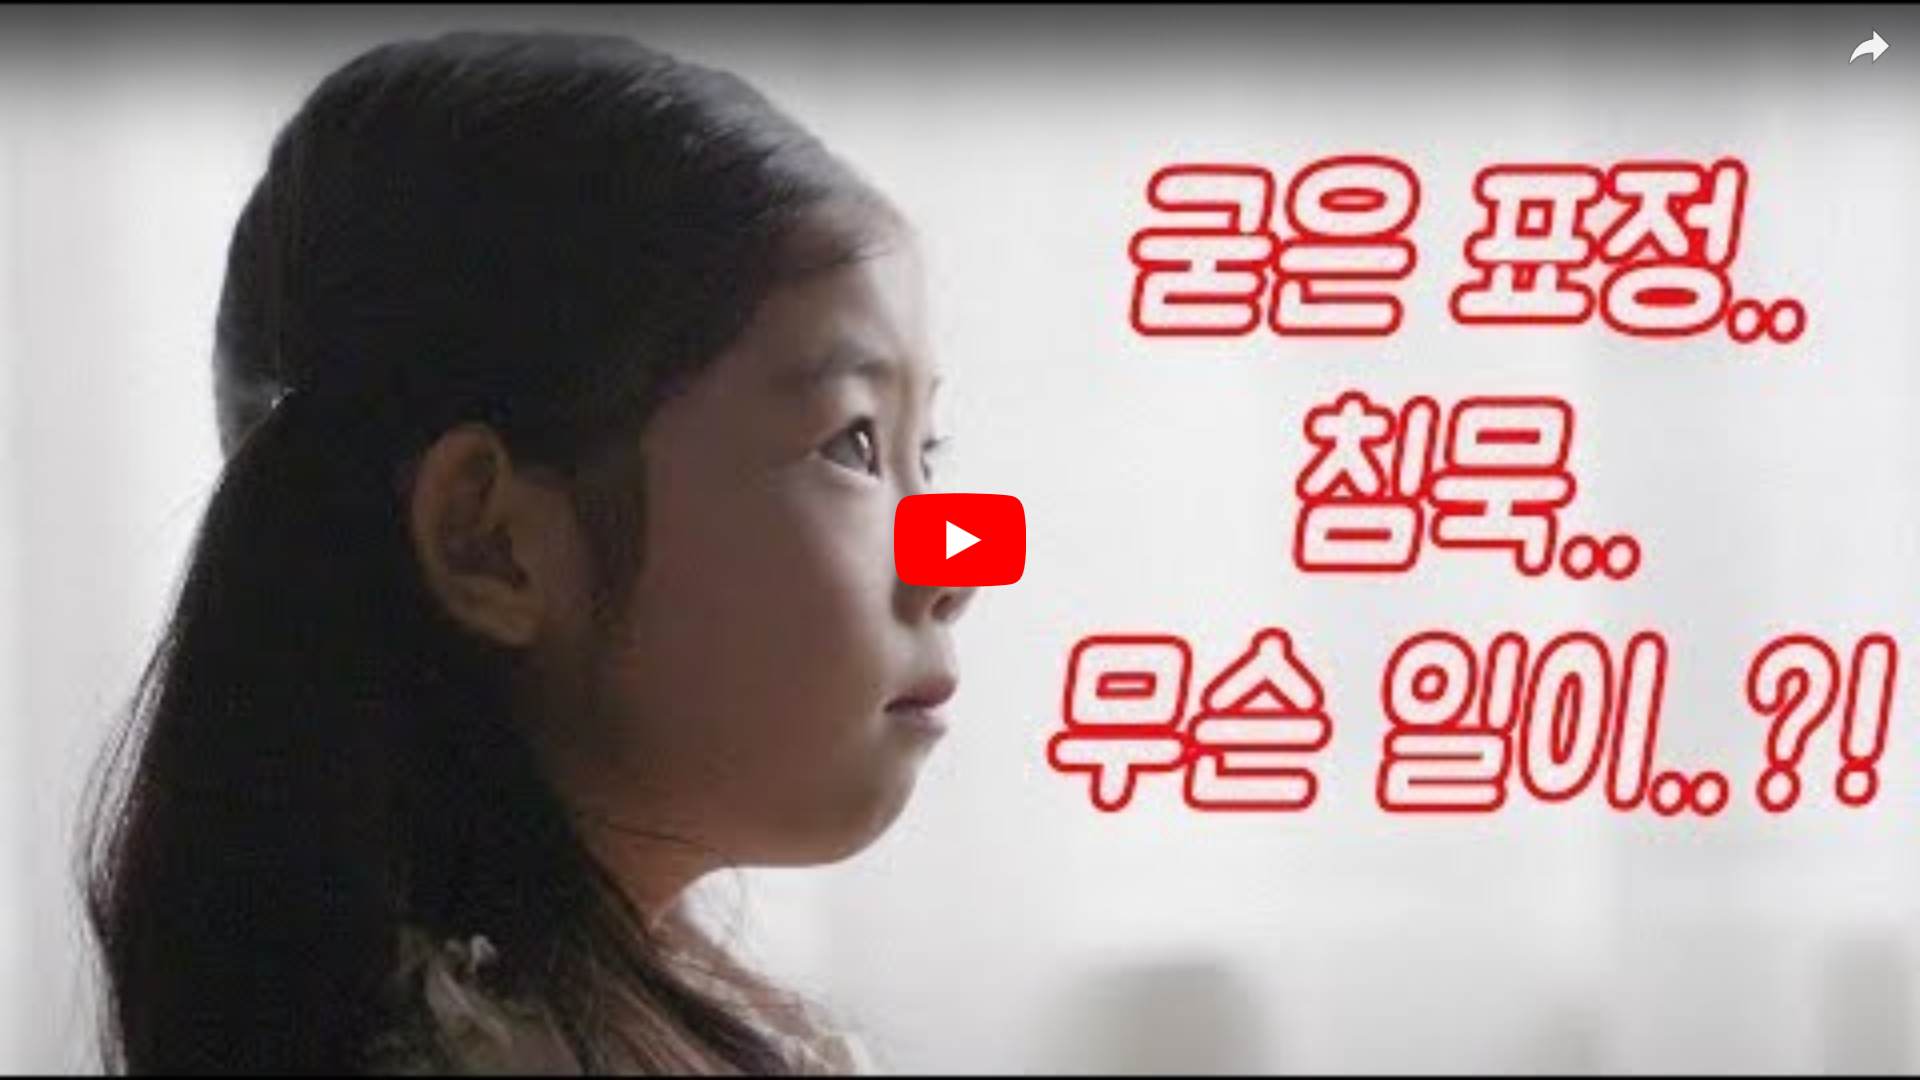 우리아이 캠페인 홍보영상(1)